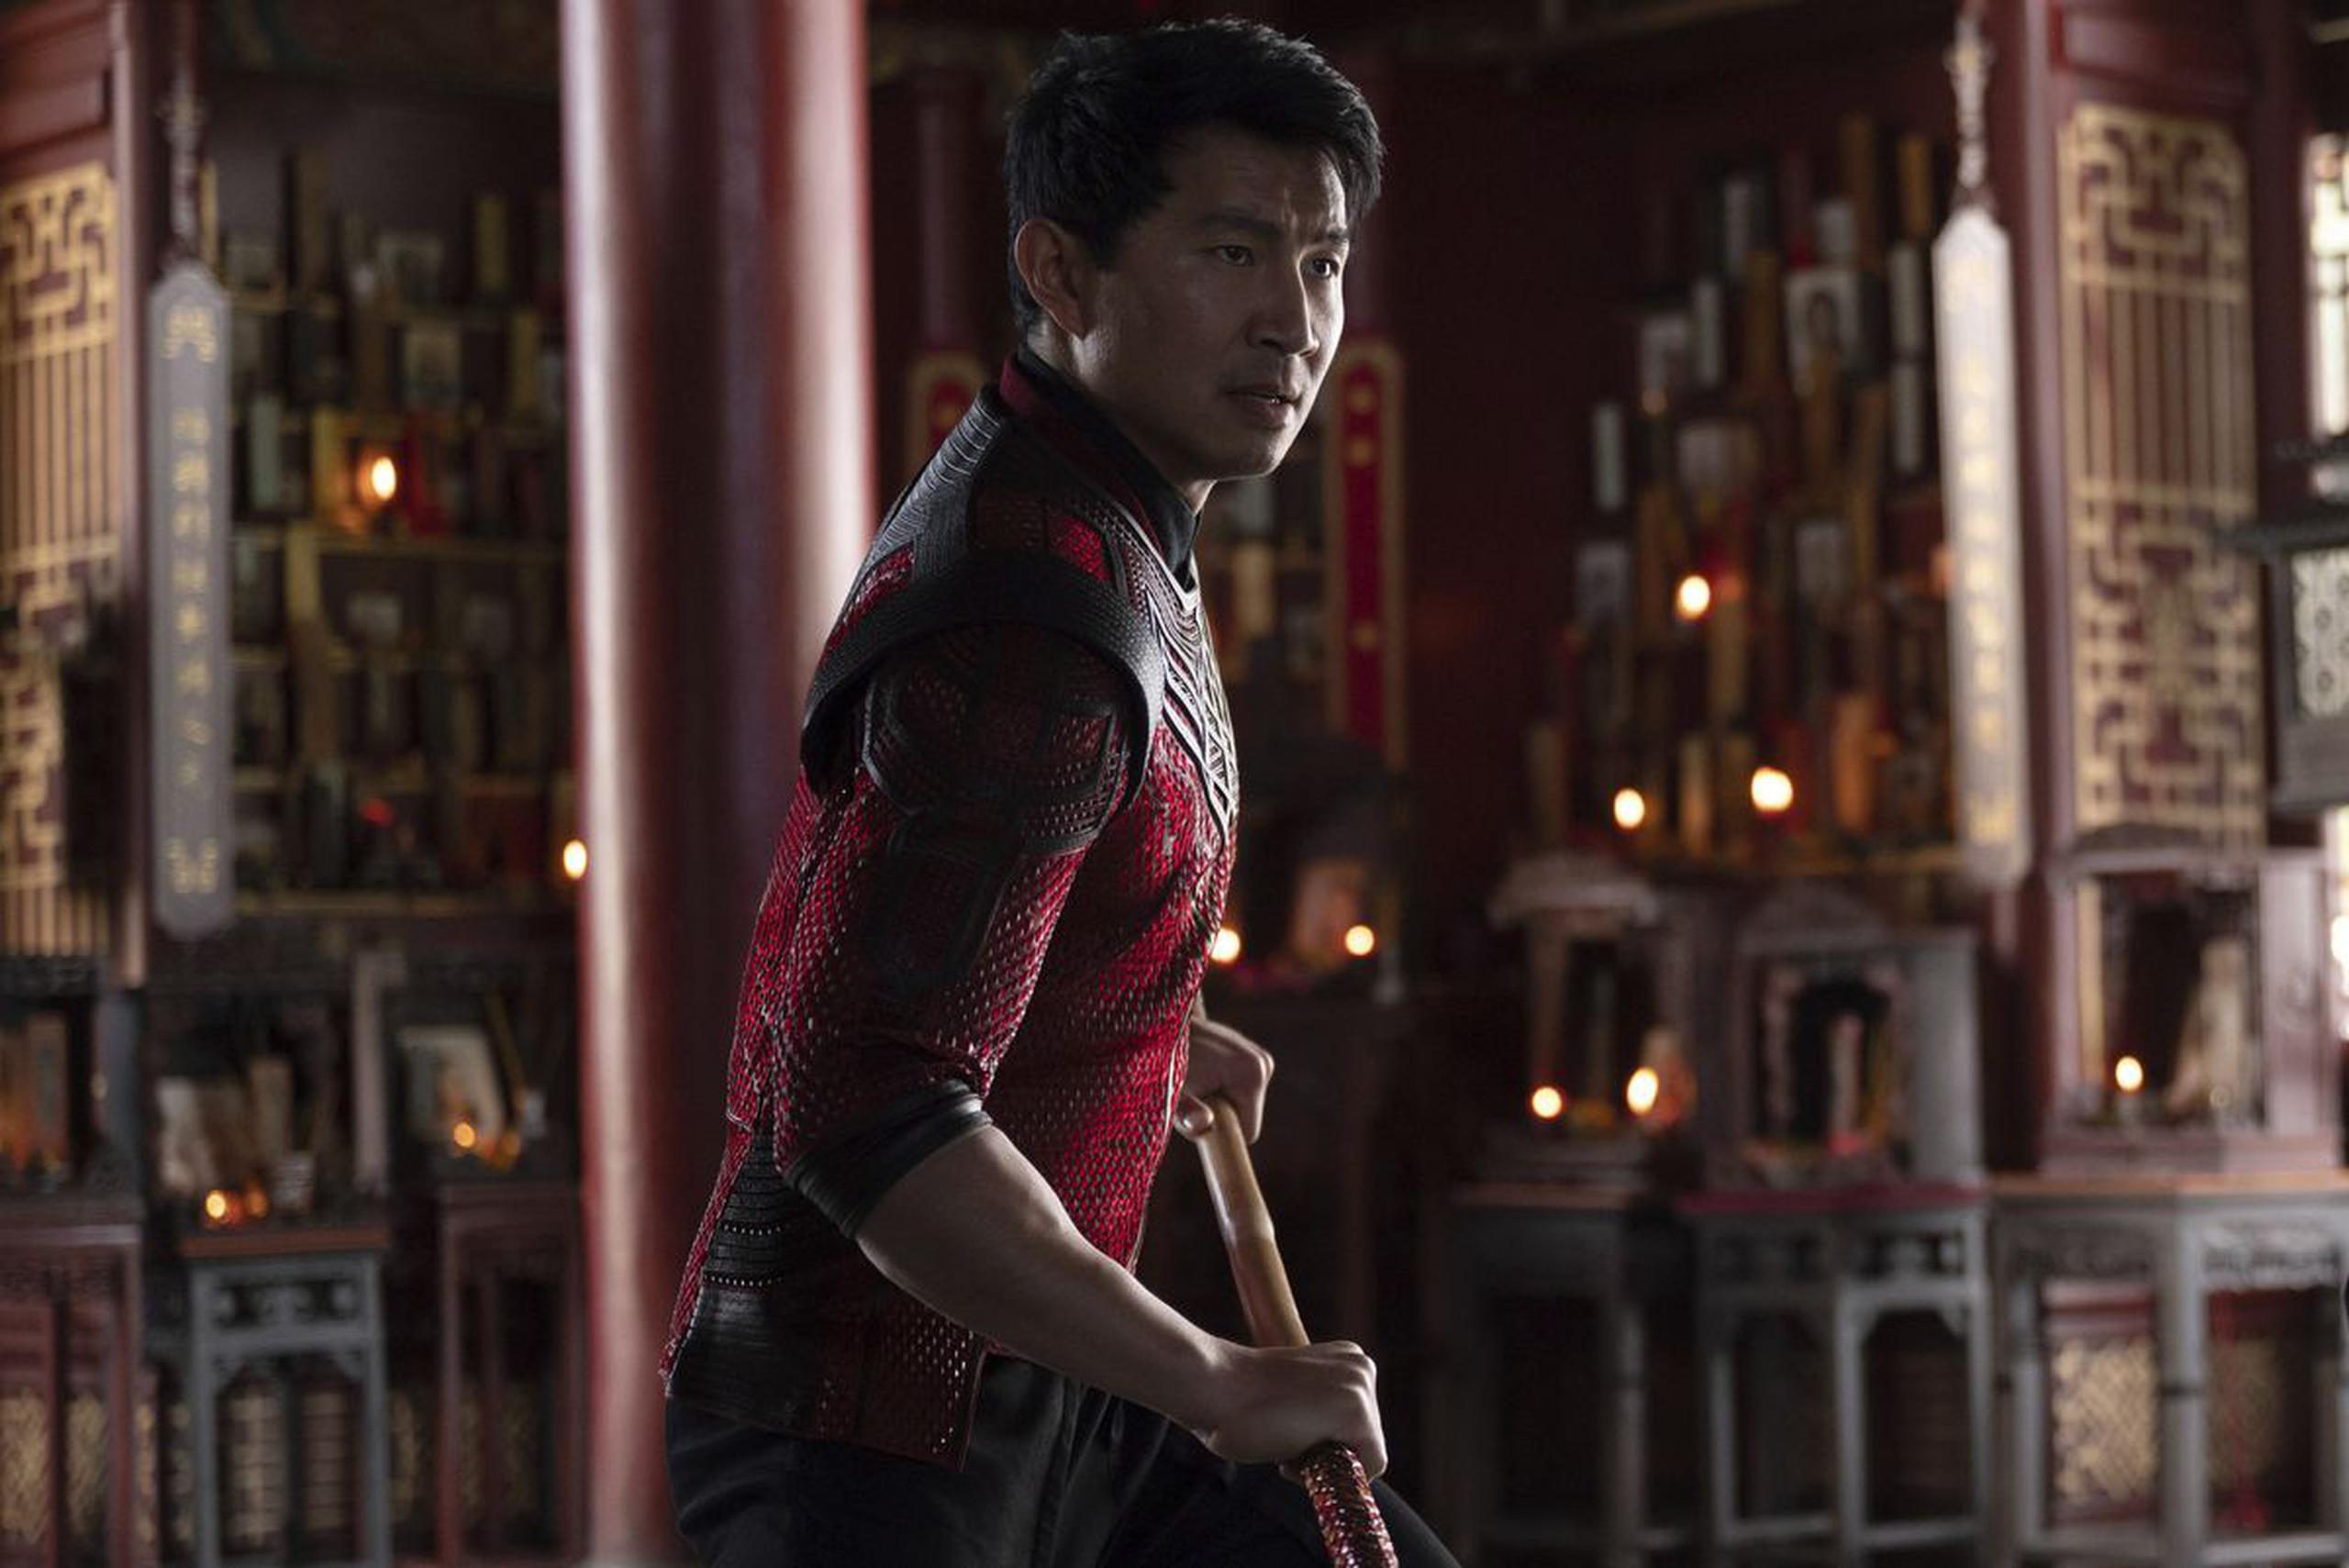 El actor Simu Liu protagoniza la película "Shang-Chi and The Legend of the 10 Rings".